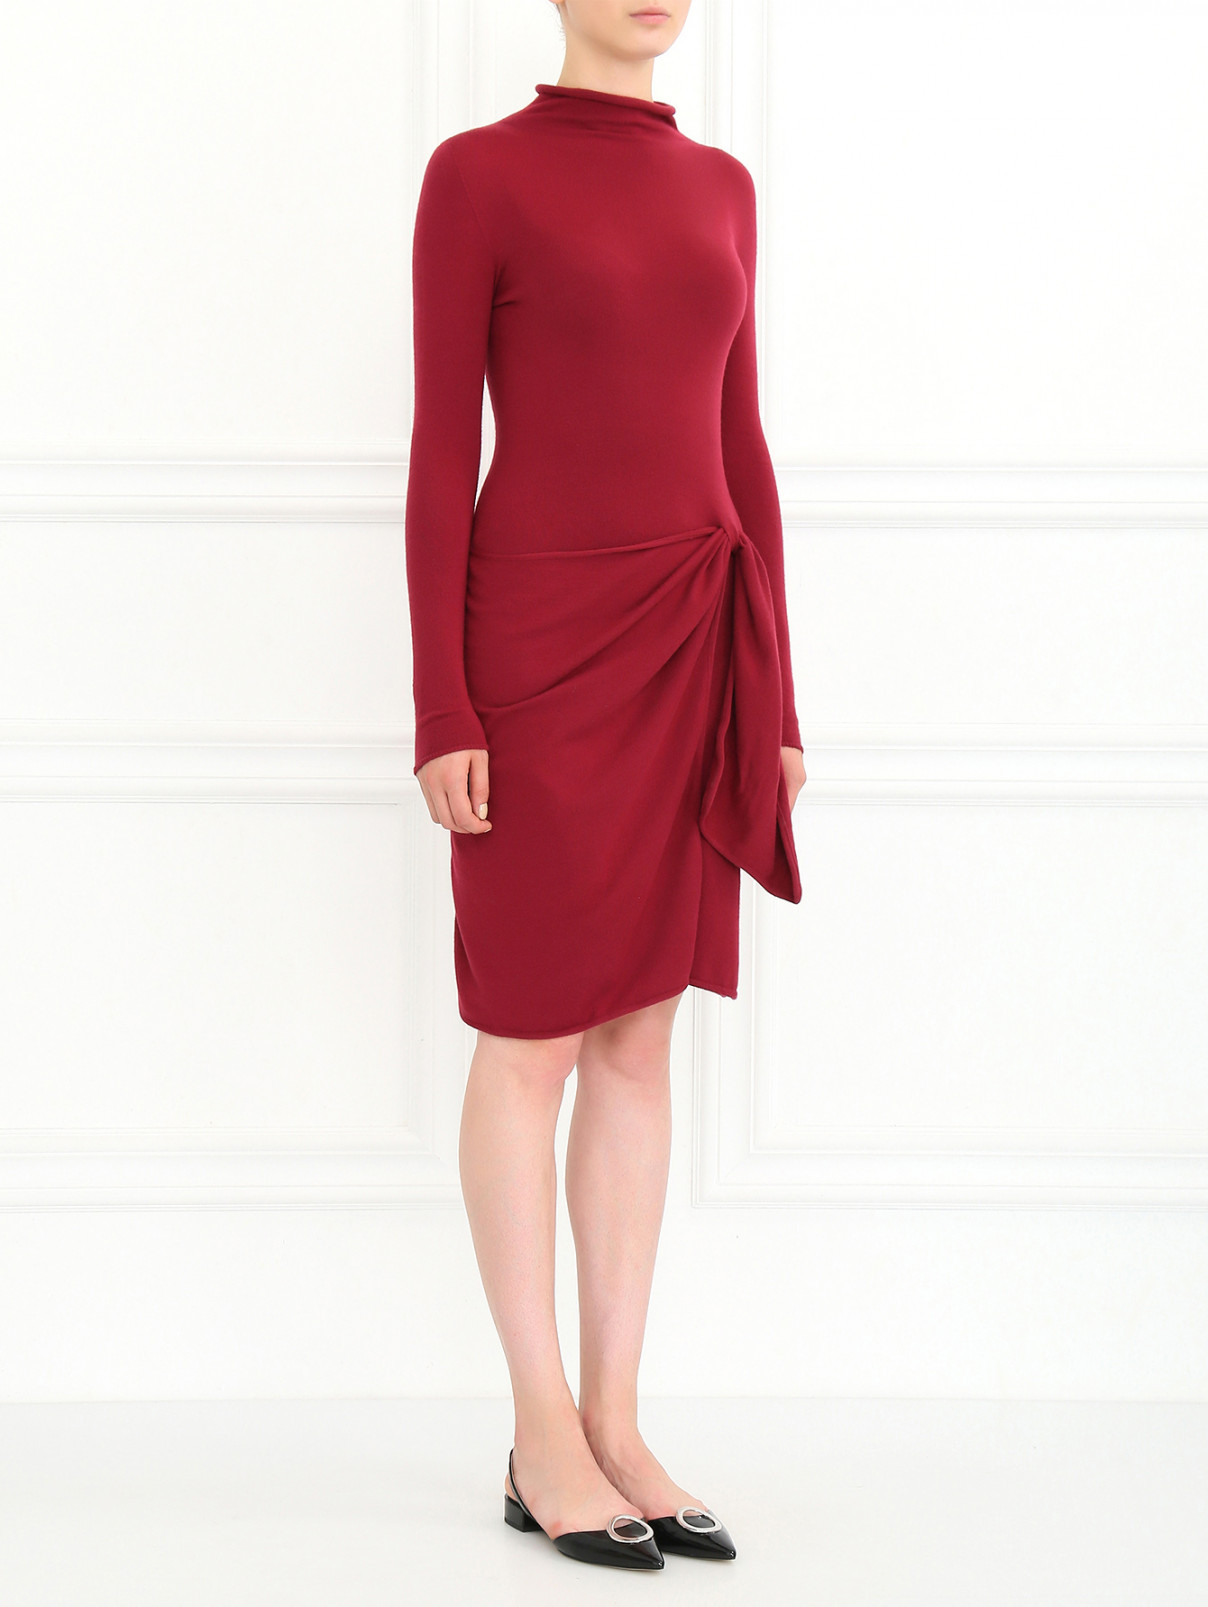 Трикотажное платье с драпировкой Emporio Armani  –  Модель Общий вид  – Цвет:  Красный